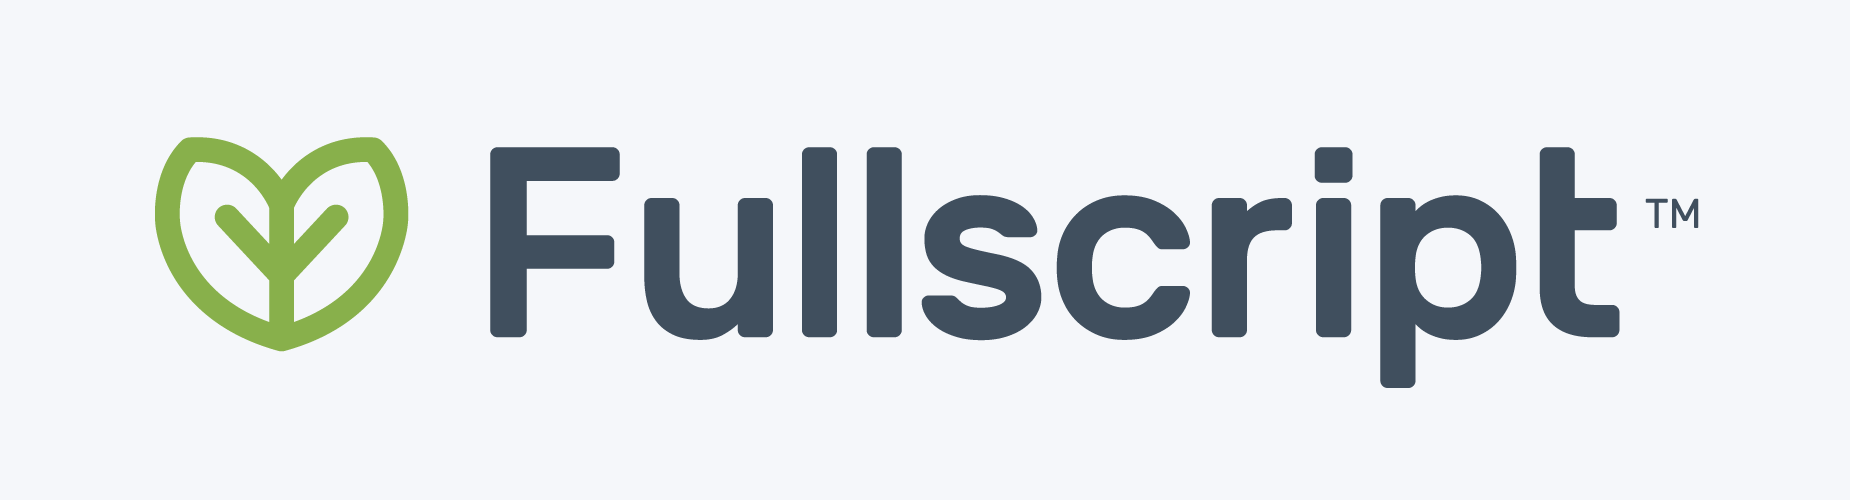 Fullscript brand logo